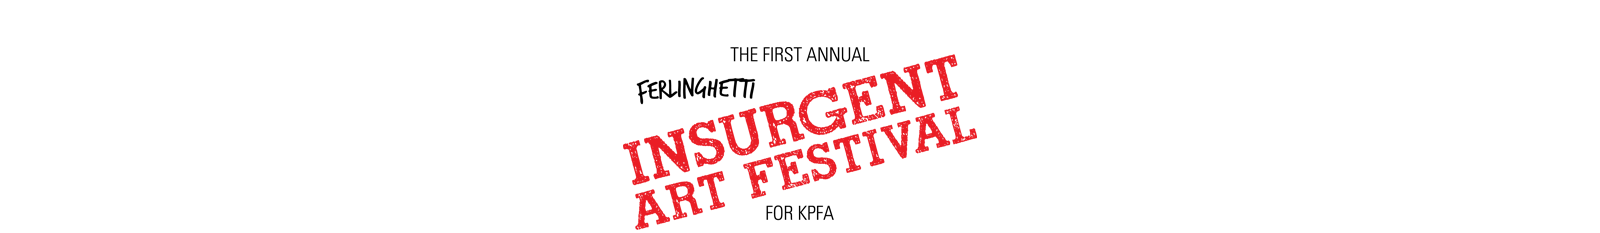 Furlinghetti Insurgent Art Festival Logo